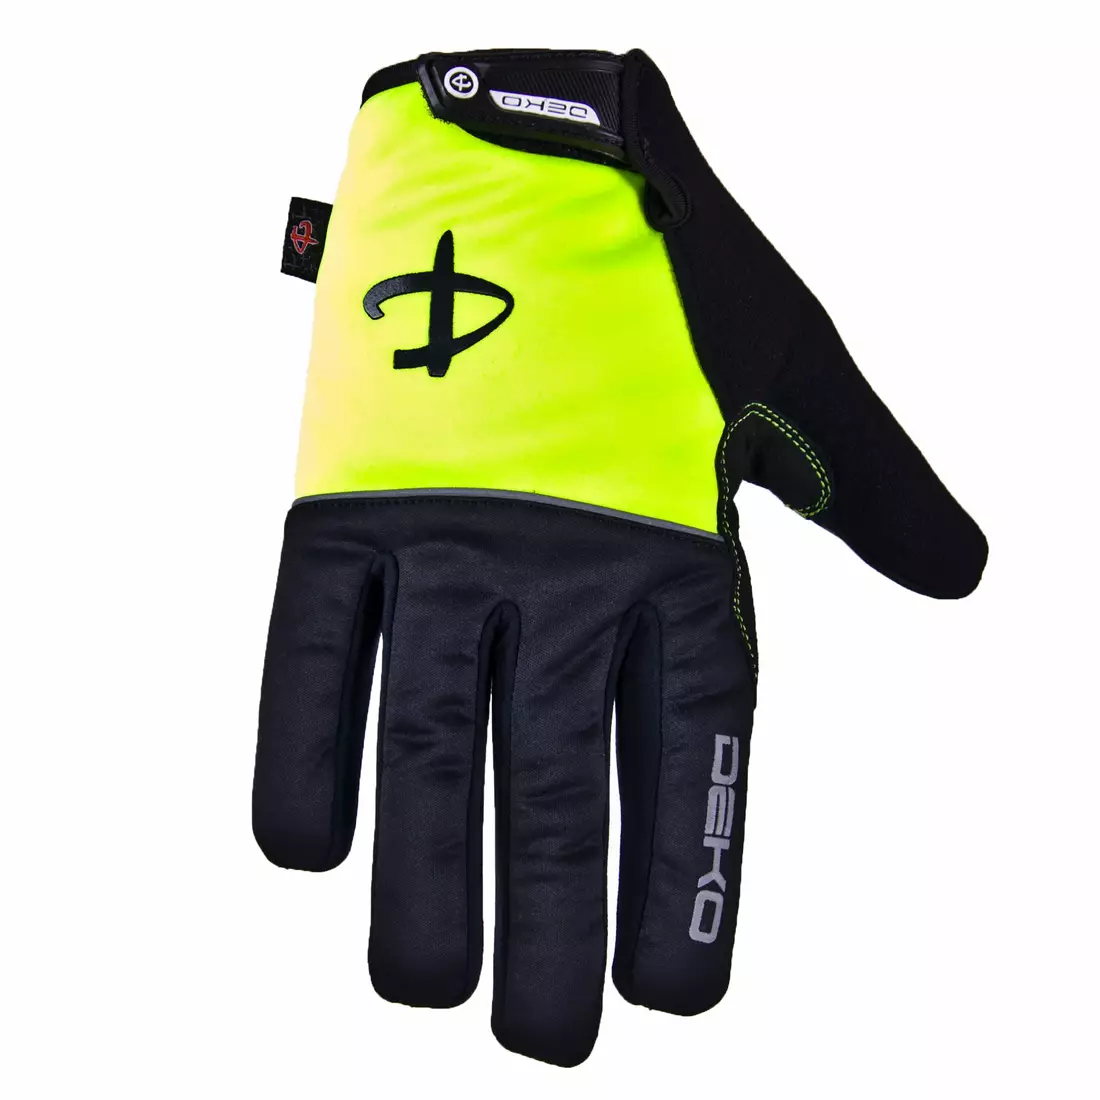 Zimní cyklistické rukavice DEKO ROST černo-fluor žluté DKWG-0715-006A